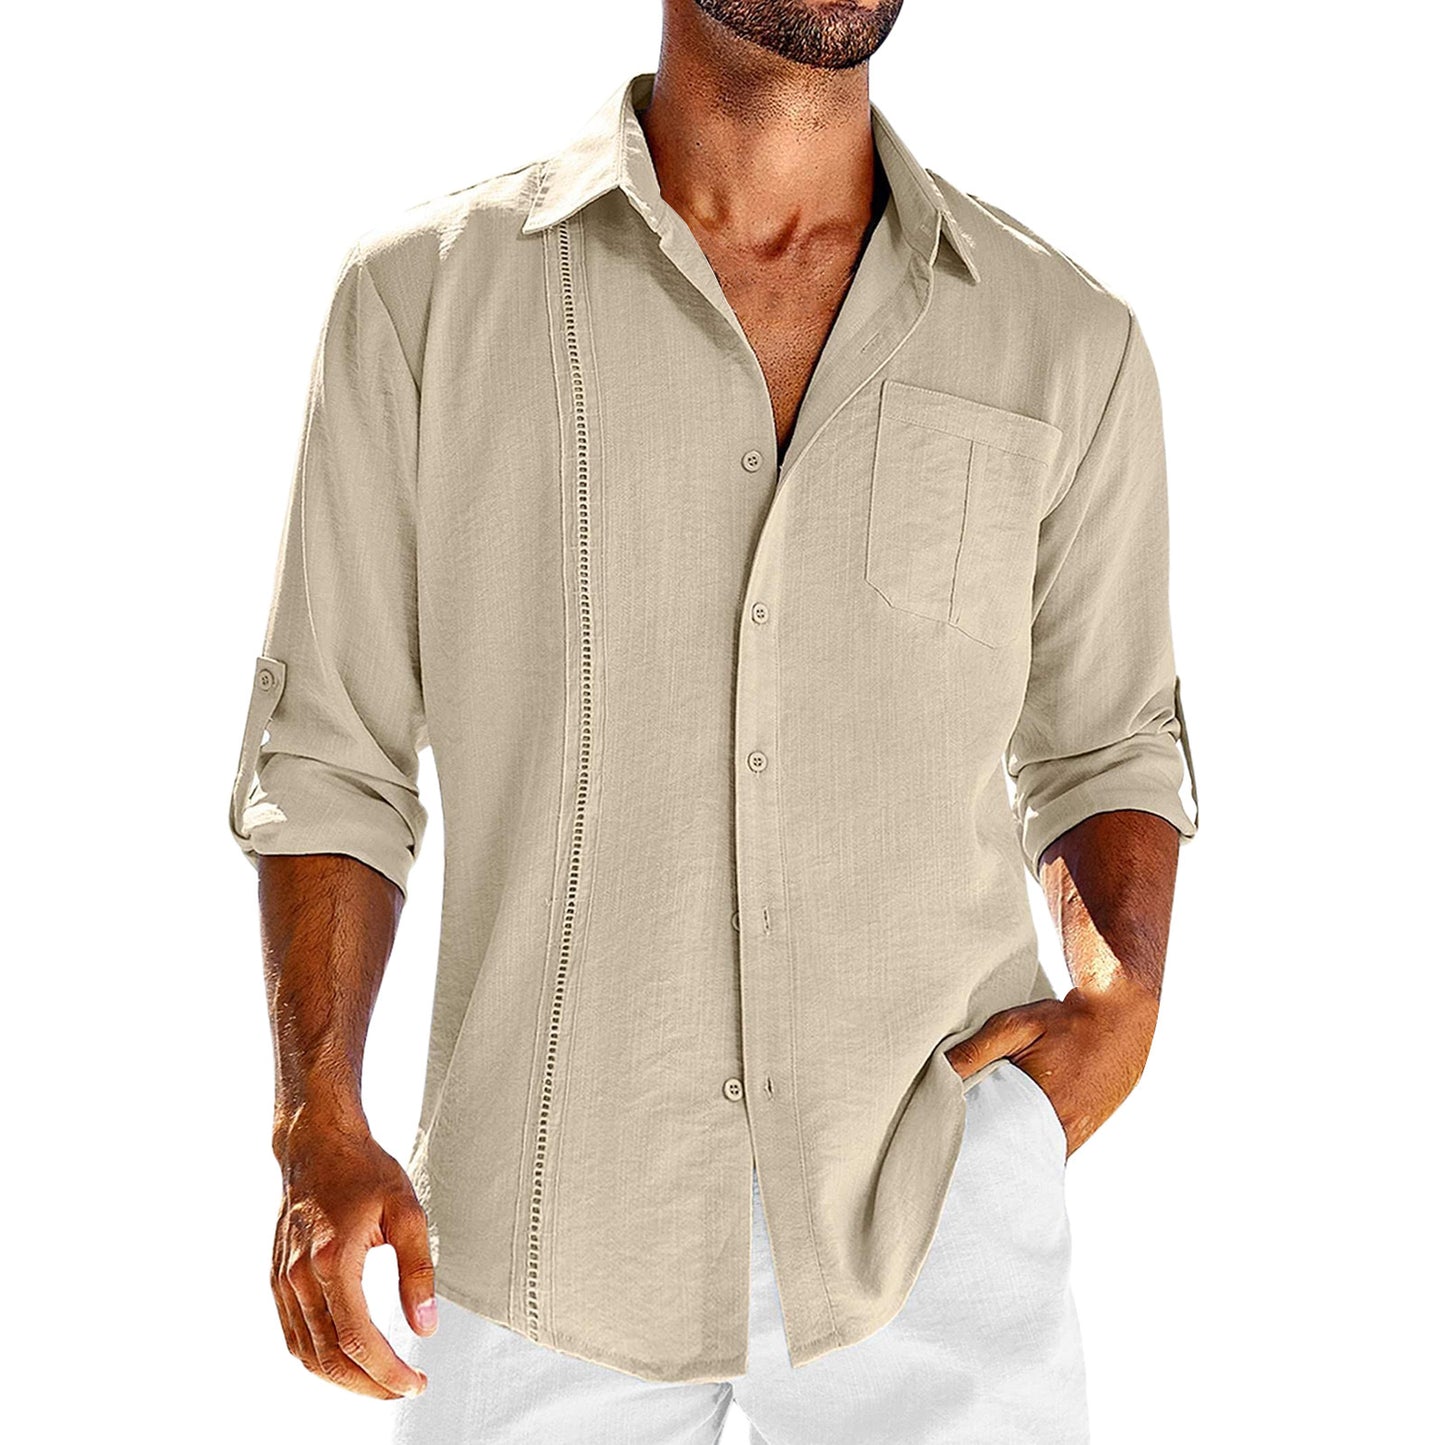 Men's Casual Linen Long Sleeve Button Down Shirt